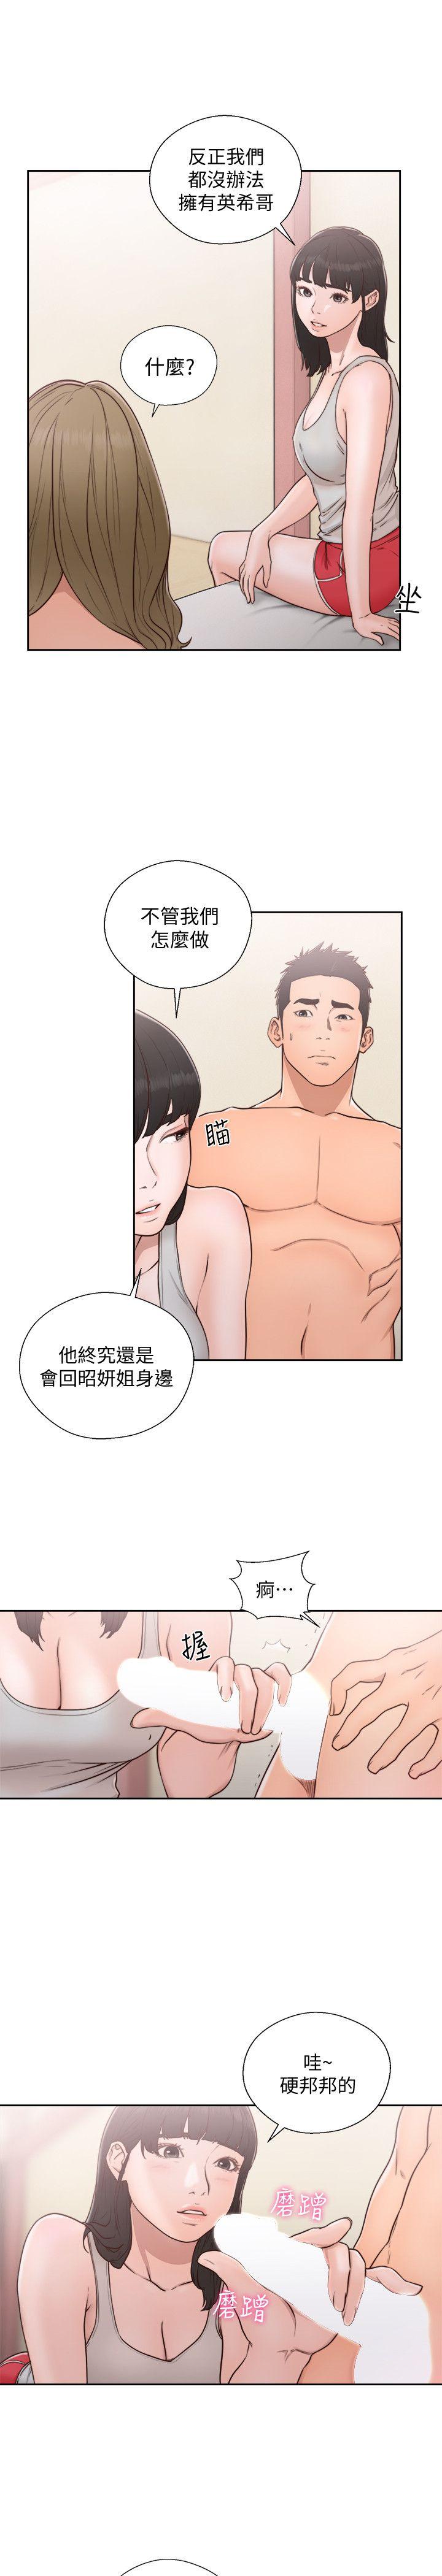 韩国污漫画 解禁:初始的快感 第74话-开始游戏吧? 22